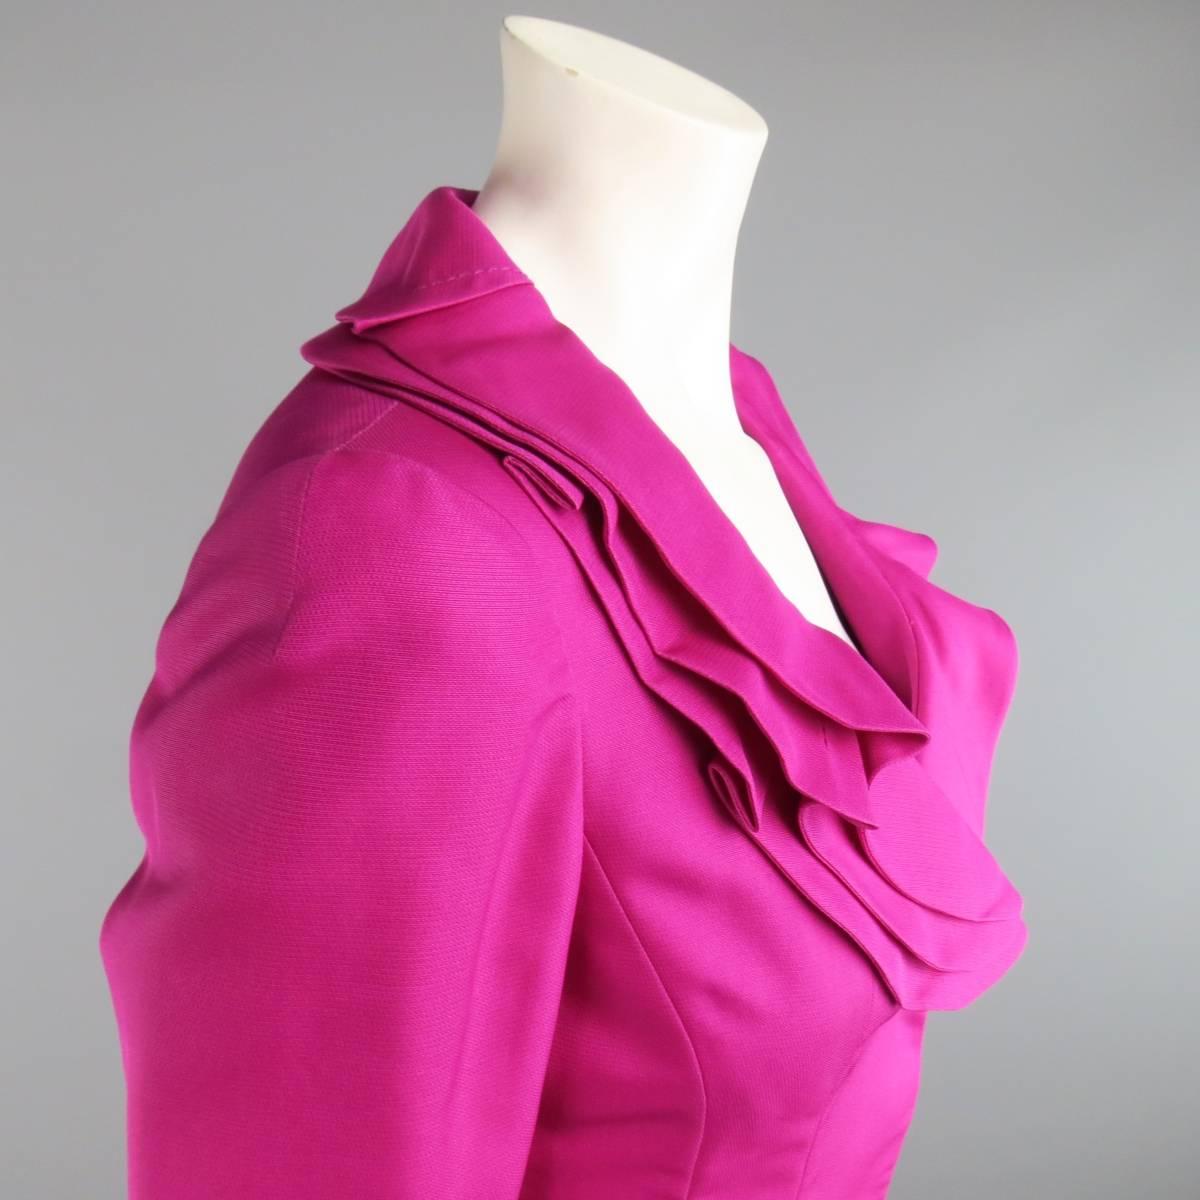 Women's VALENTINO Size 4 Fuchsia Textured Silk Taffeta Ruffled Collar Jacket Skirt Suit